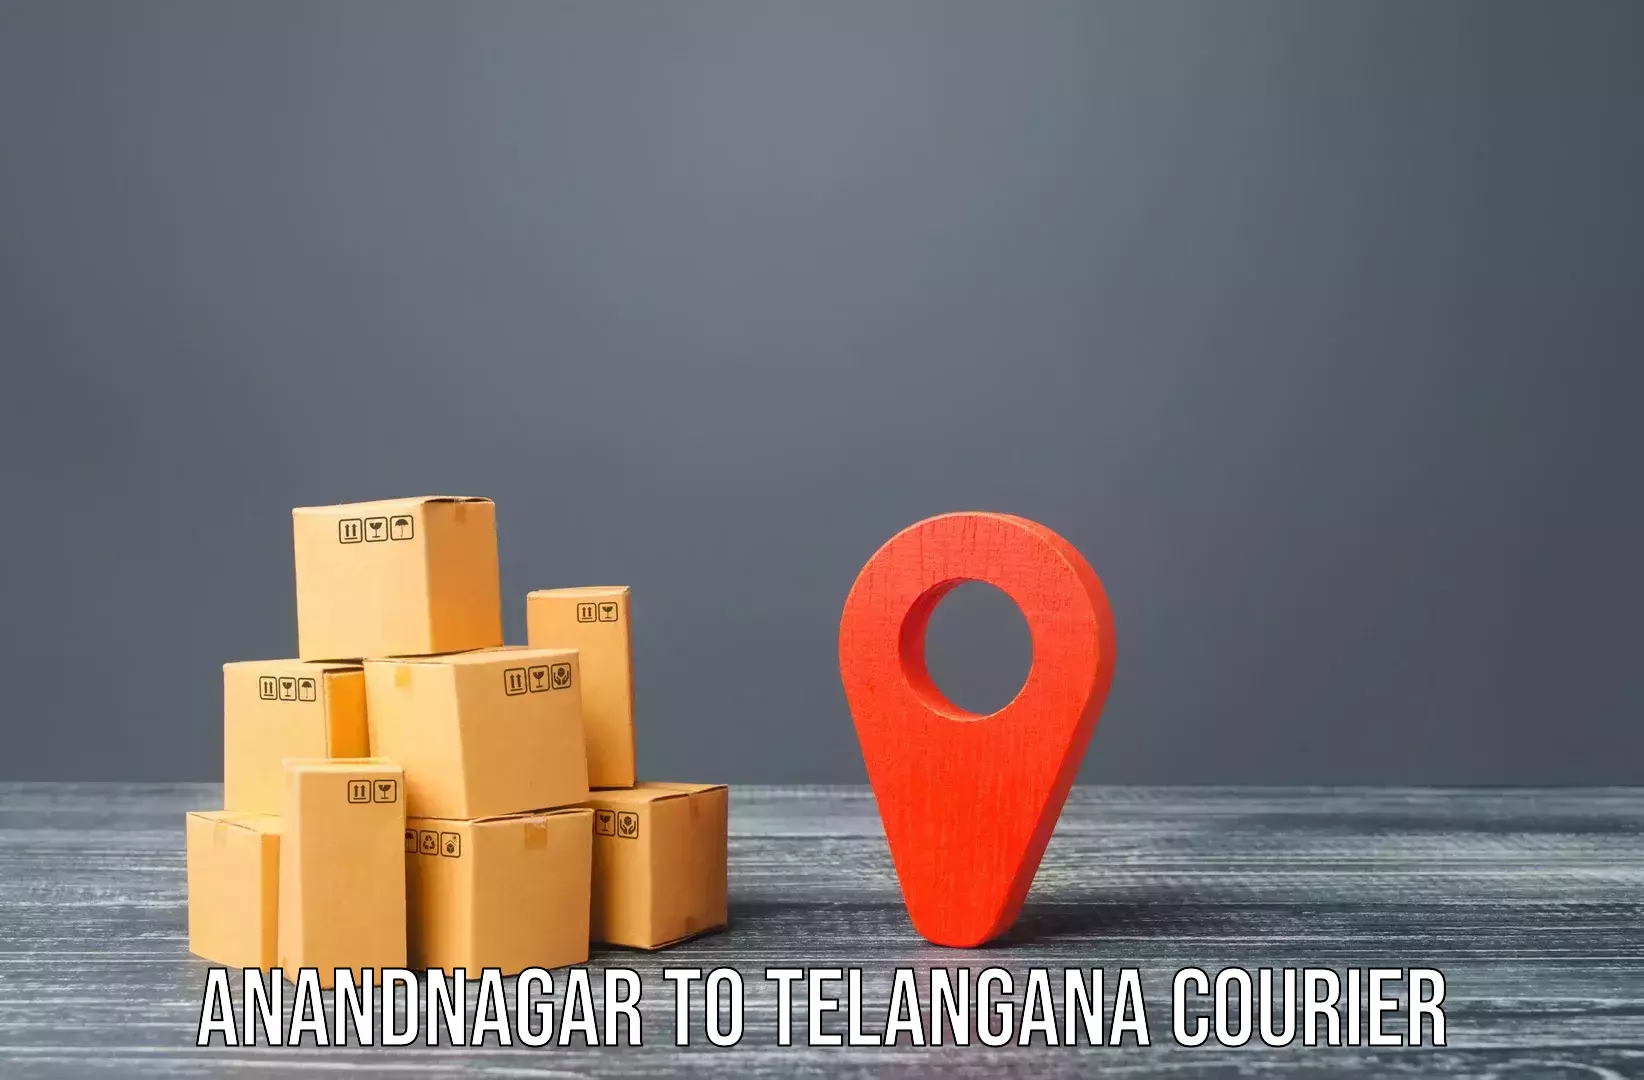 Furniture transport and storage in Anandnagar to Tiryani